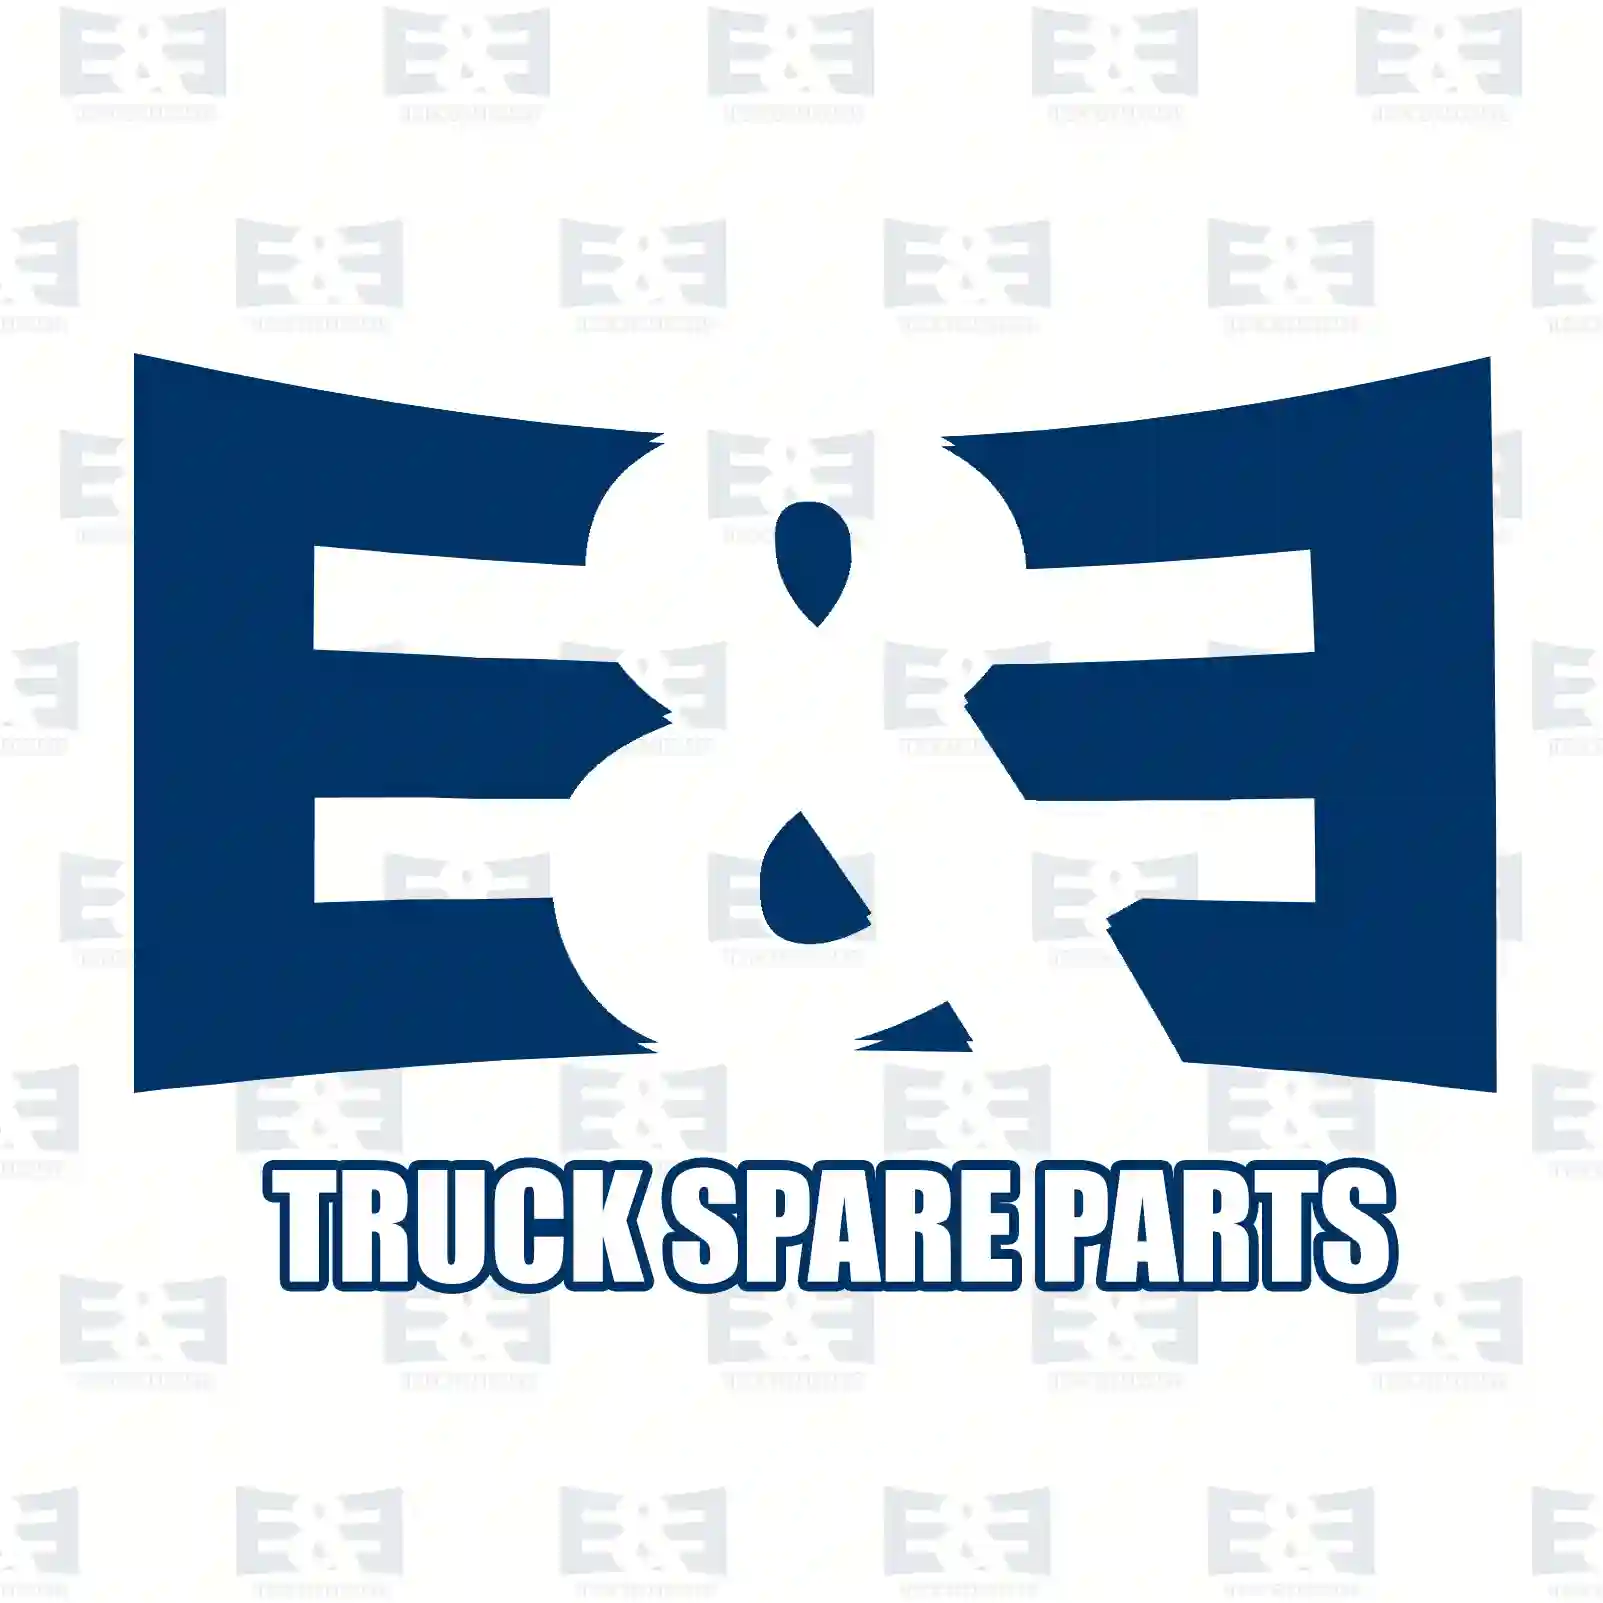 Stabilizer stay, 2E2283556, 5010253256, ZG41796-0008, ||  2E2283556 E&E Truck Spare Parts | Truck Spare Parts, Auotomotive Spare Parts Stabilizer stay, 2E2283556, 5010253256, ZG41796-0008, ||  2E2283556 E&E Truck Spare Parts | Truck Spare Parts, Auotomotive Spare Parts